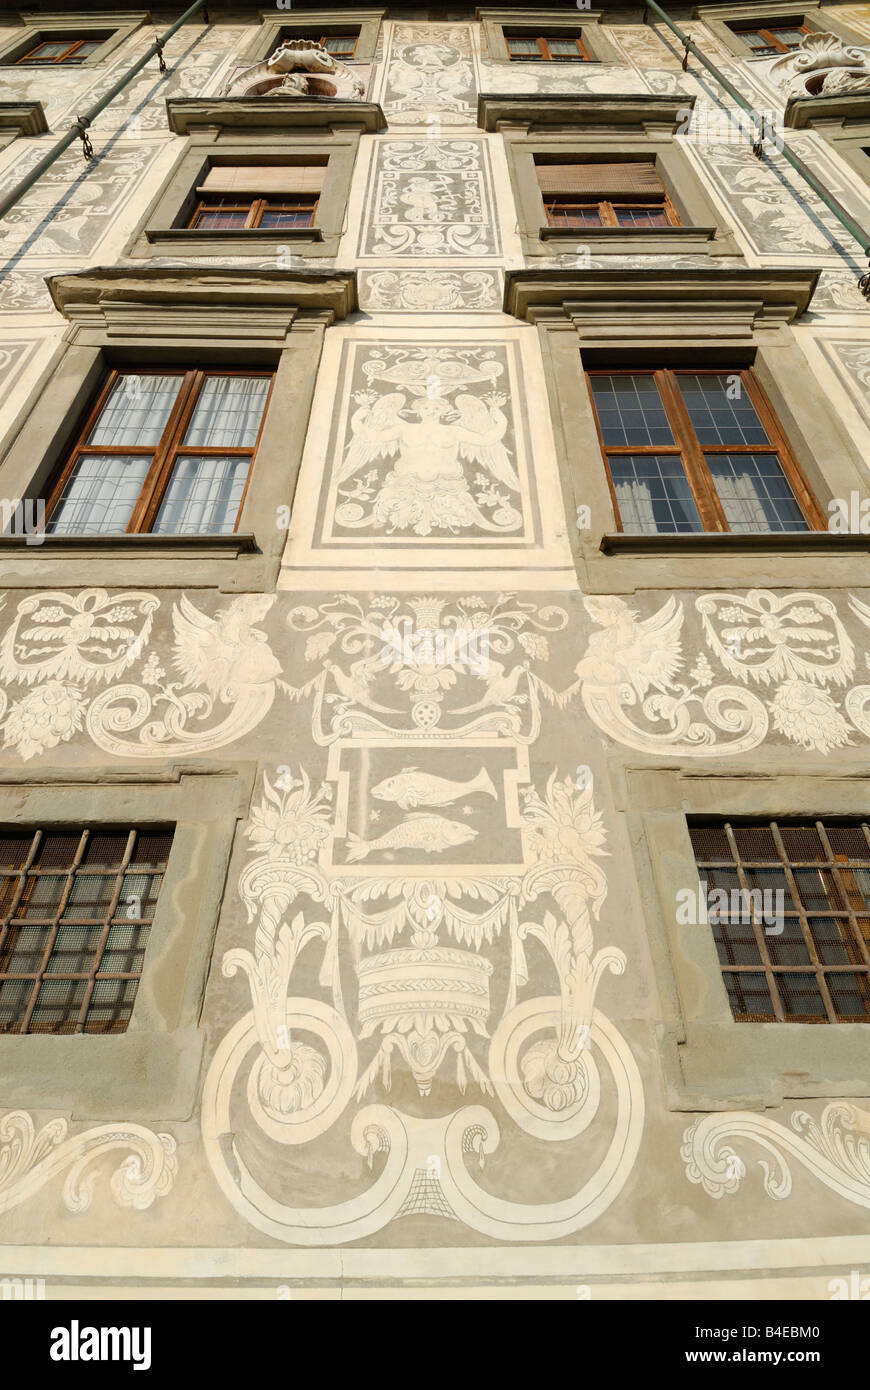 Pisa Italia Palazzo della Carovana dei Cavalieri aka La Scuola Normale Superiore la facciata decorata da Vasari Foto Stock